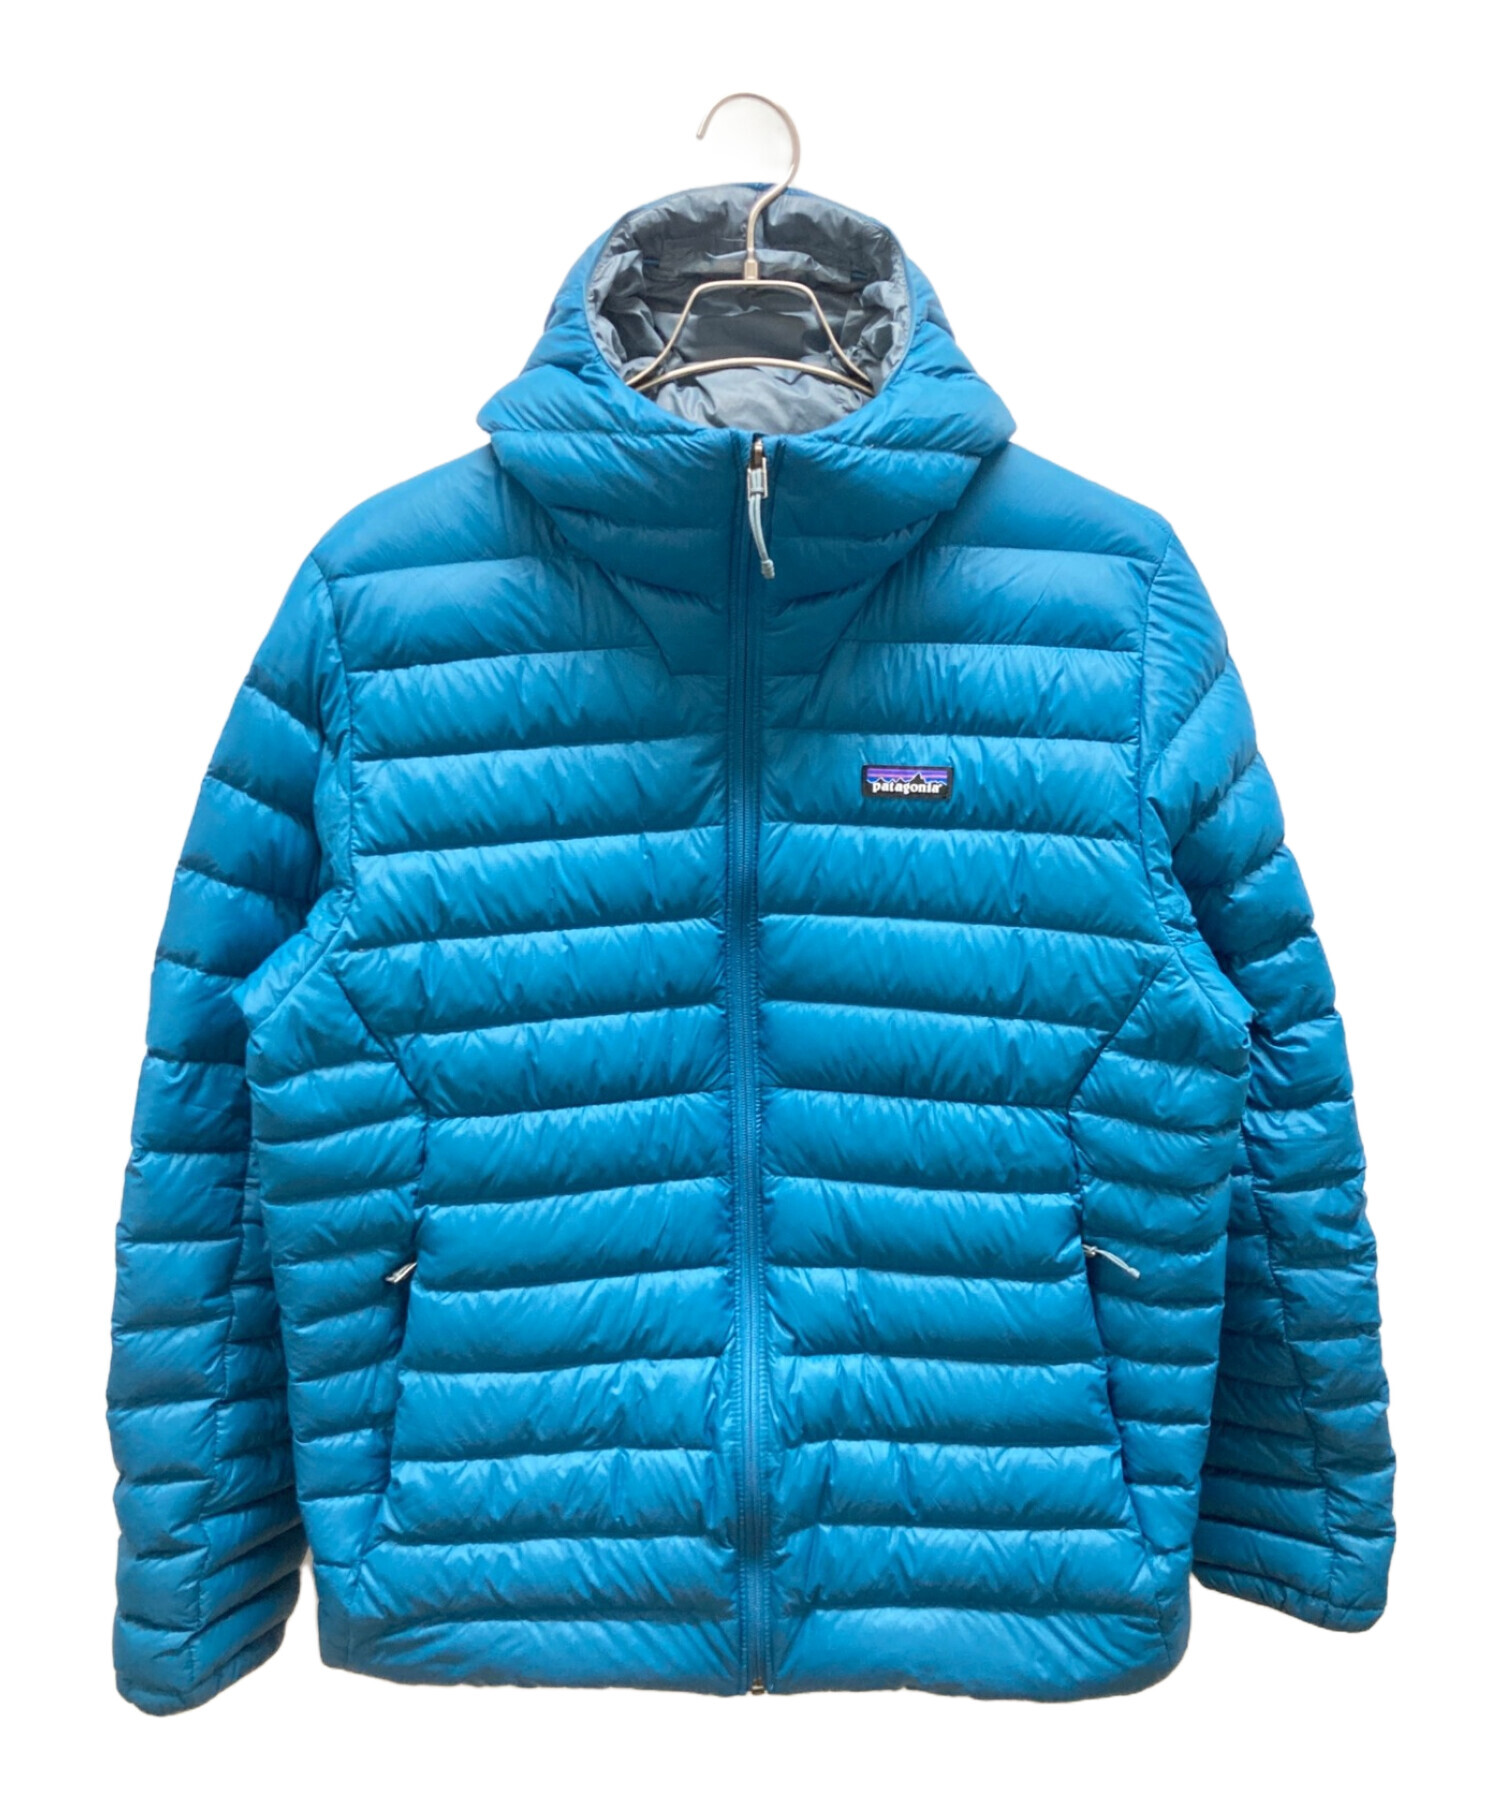 Patagonia (パタゴニア) ダウンジャケット ブルー サイズ:L